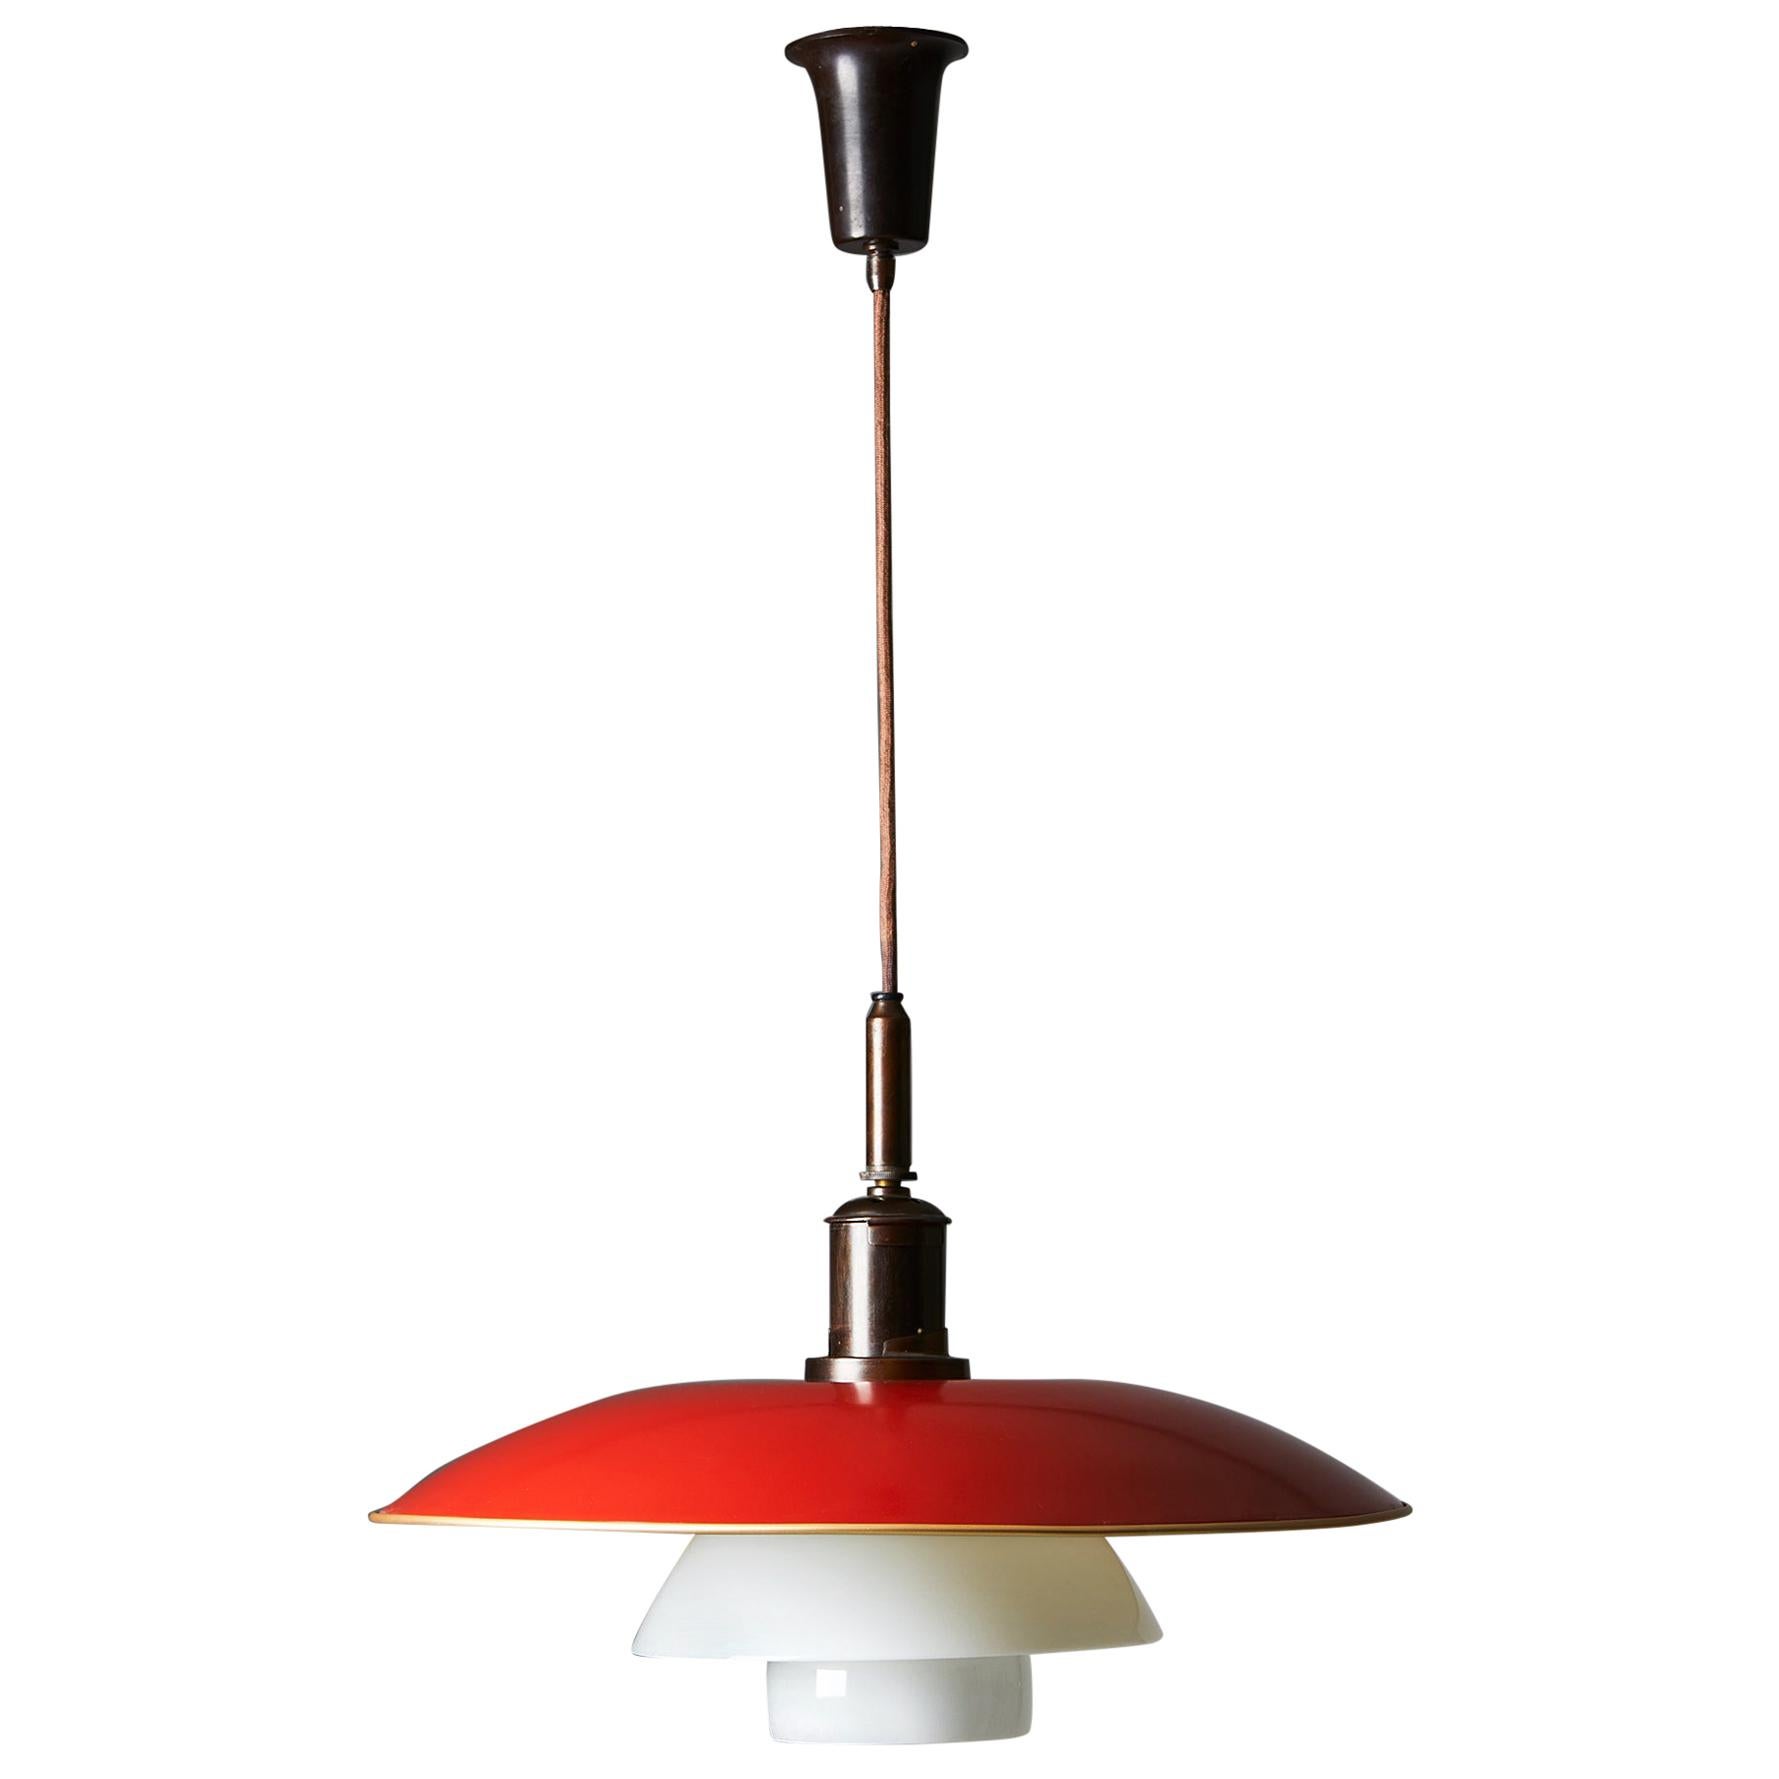 Ceiling Lamp PH 5/4 Designed by Poul Henningsen for Louis Poulsen, Denmark